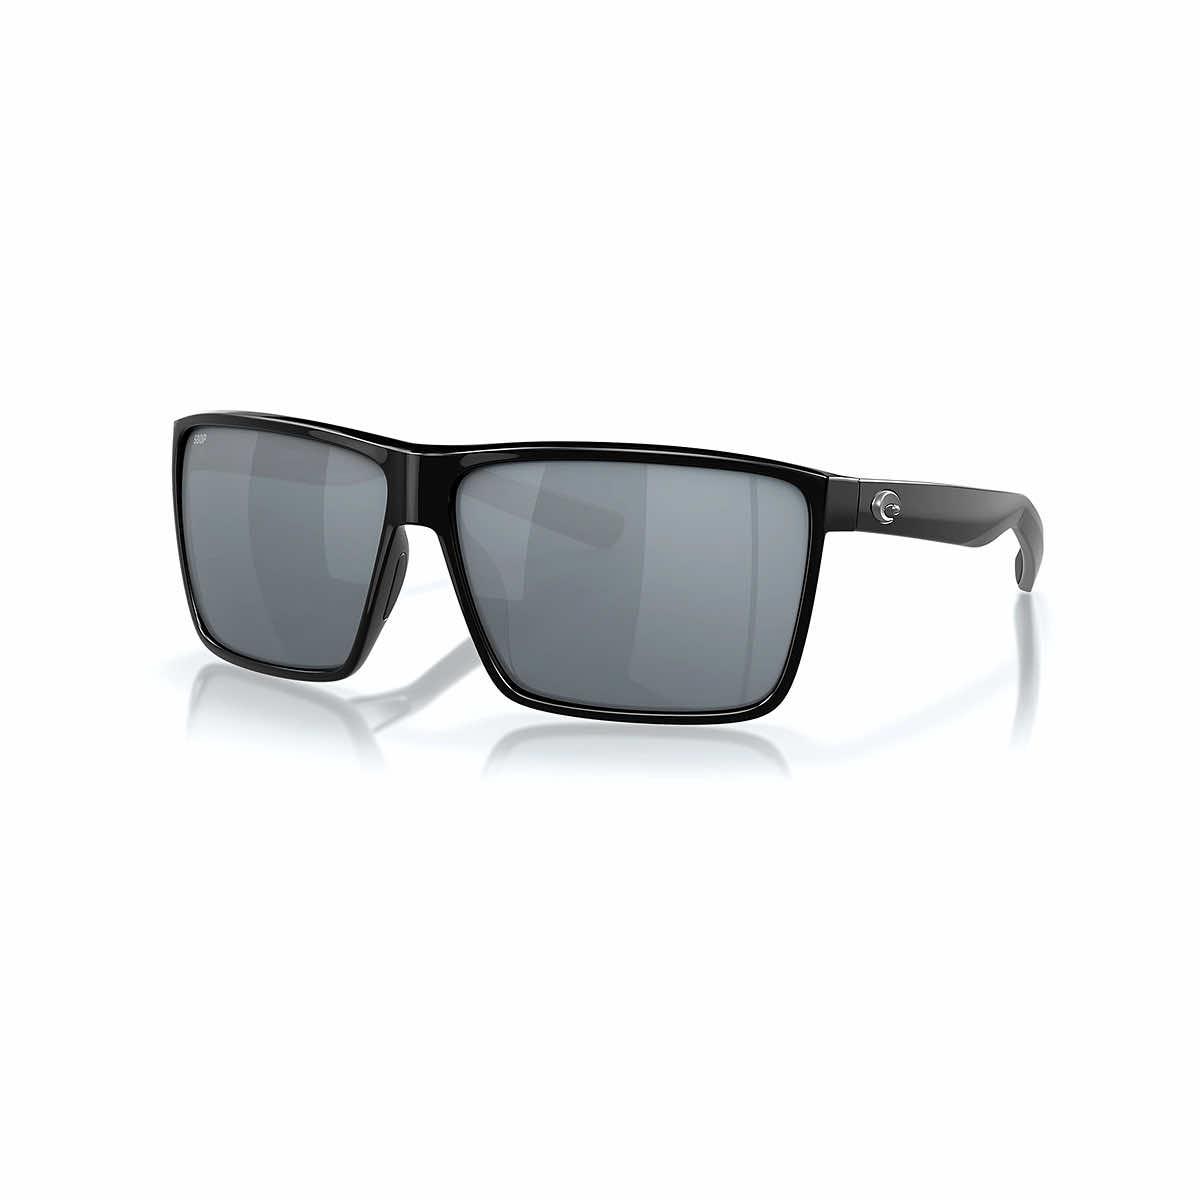  Rincon 580p Sunglasses - Polarized